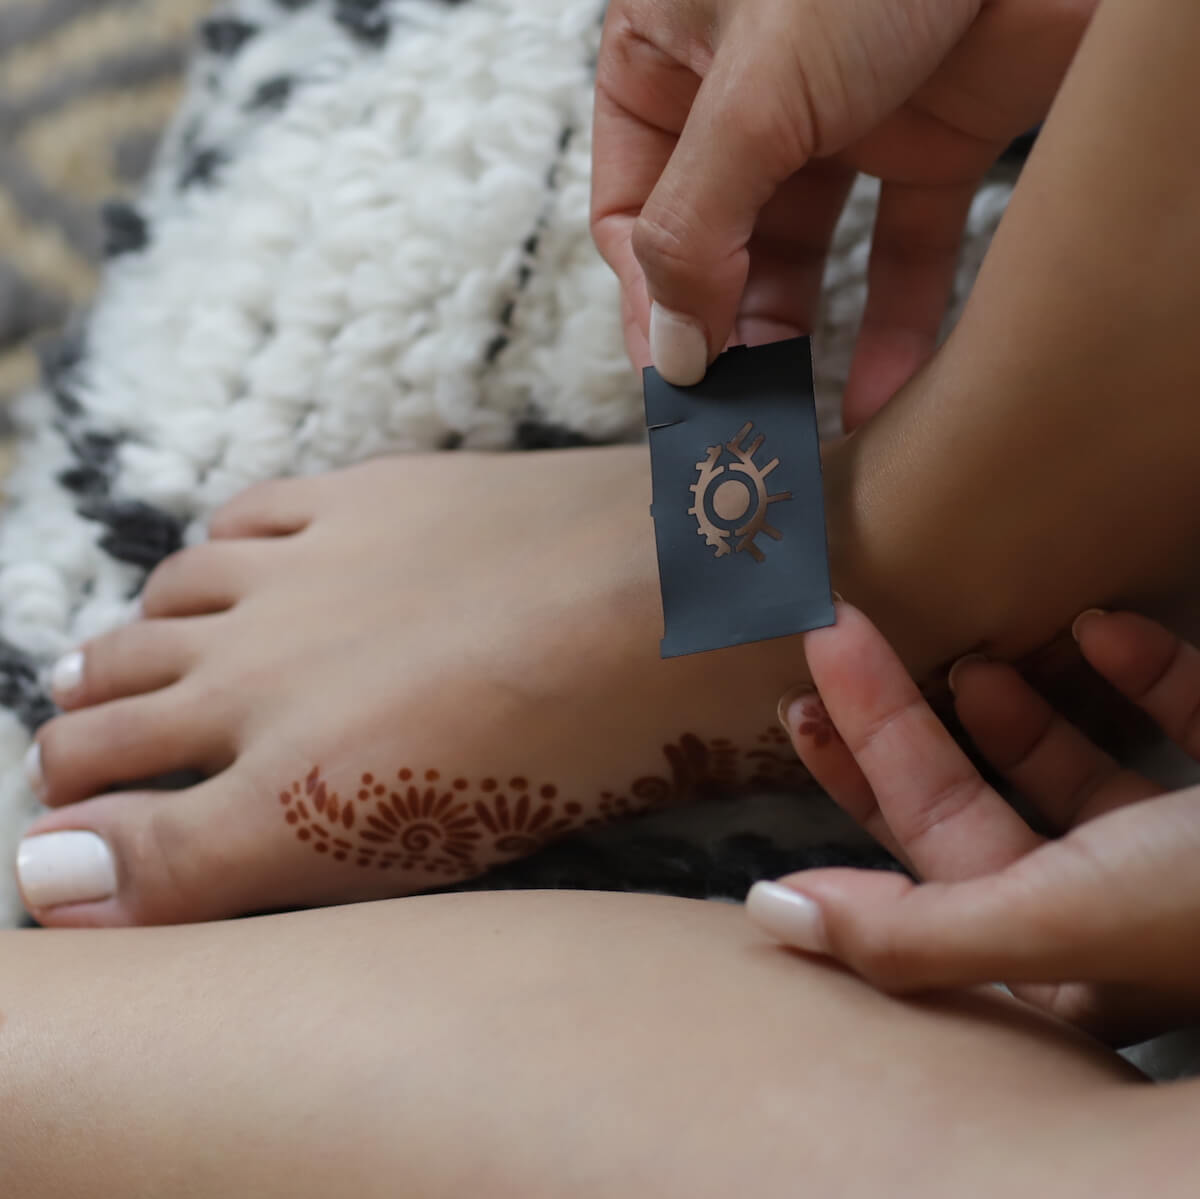 Truth - All-Seeing Eye henna design sticker stencil on foot